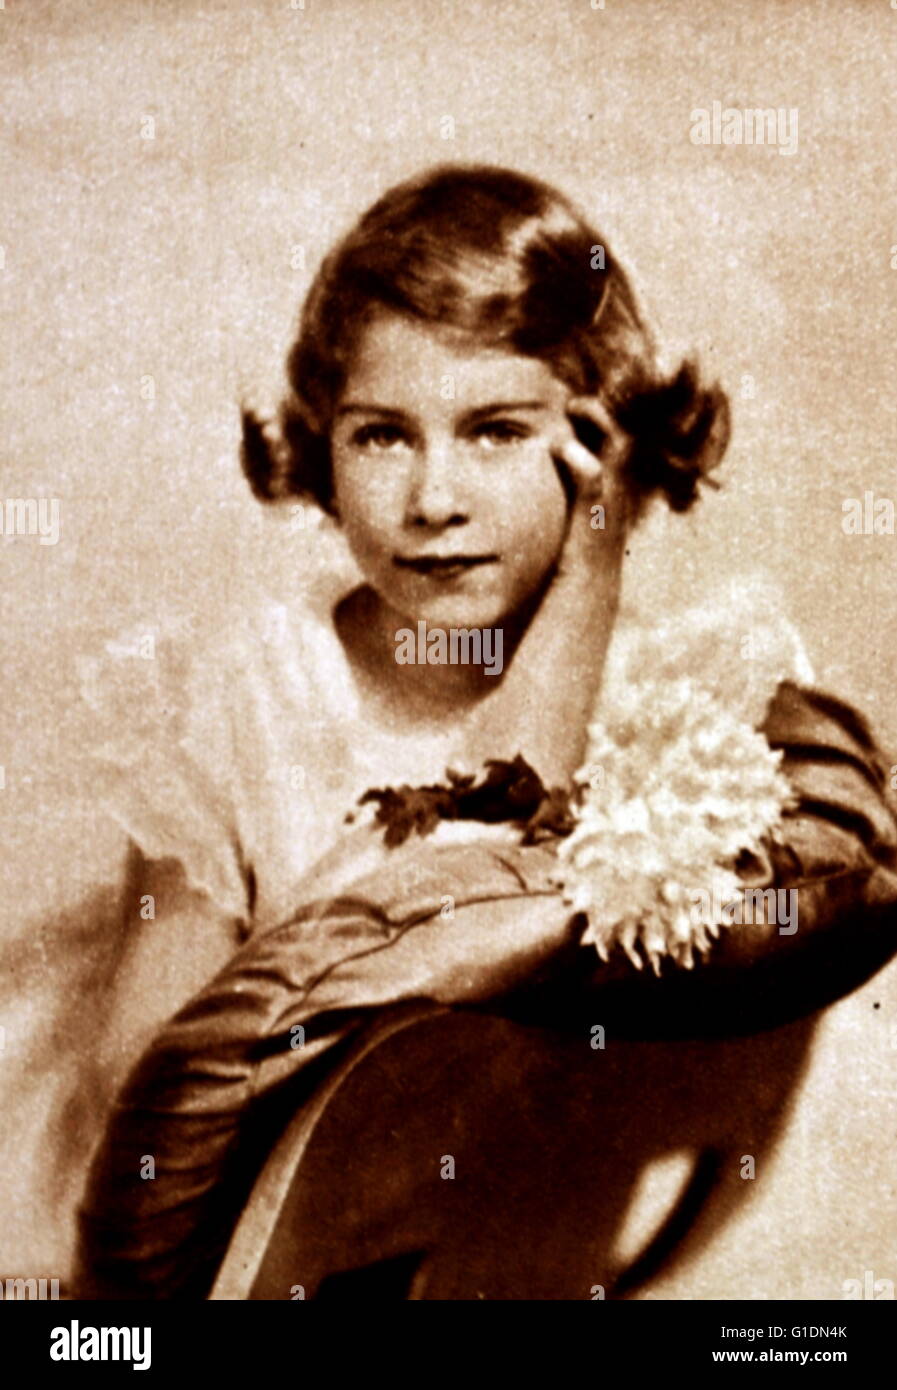 Fotografische Porträt einer jungen Prinzessin Elizabeth (1926-) die ältere Schwester von Prinzessin Margaret (1930-2002) und zukünftige Königin. Vom 20. Jahrhundert Stockfoto